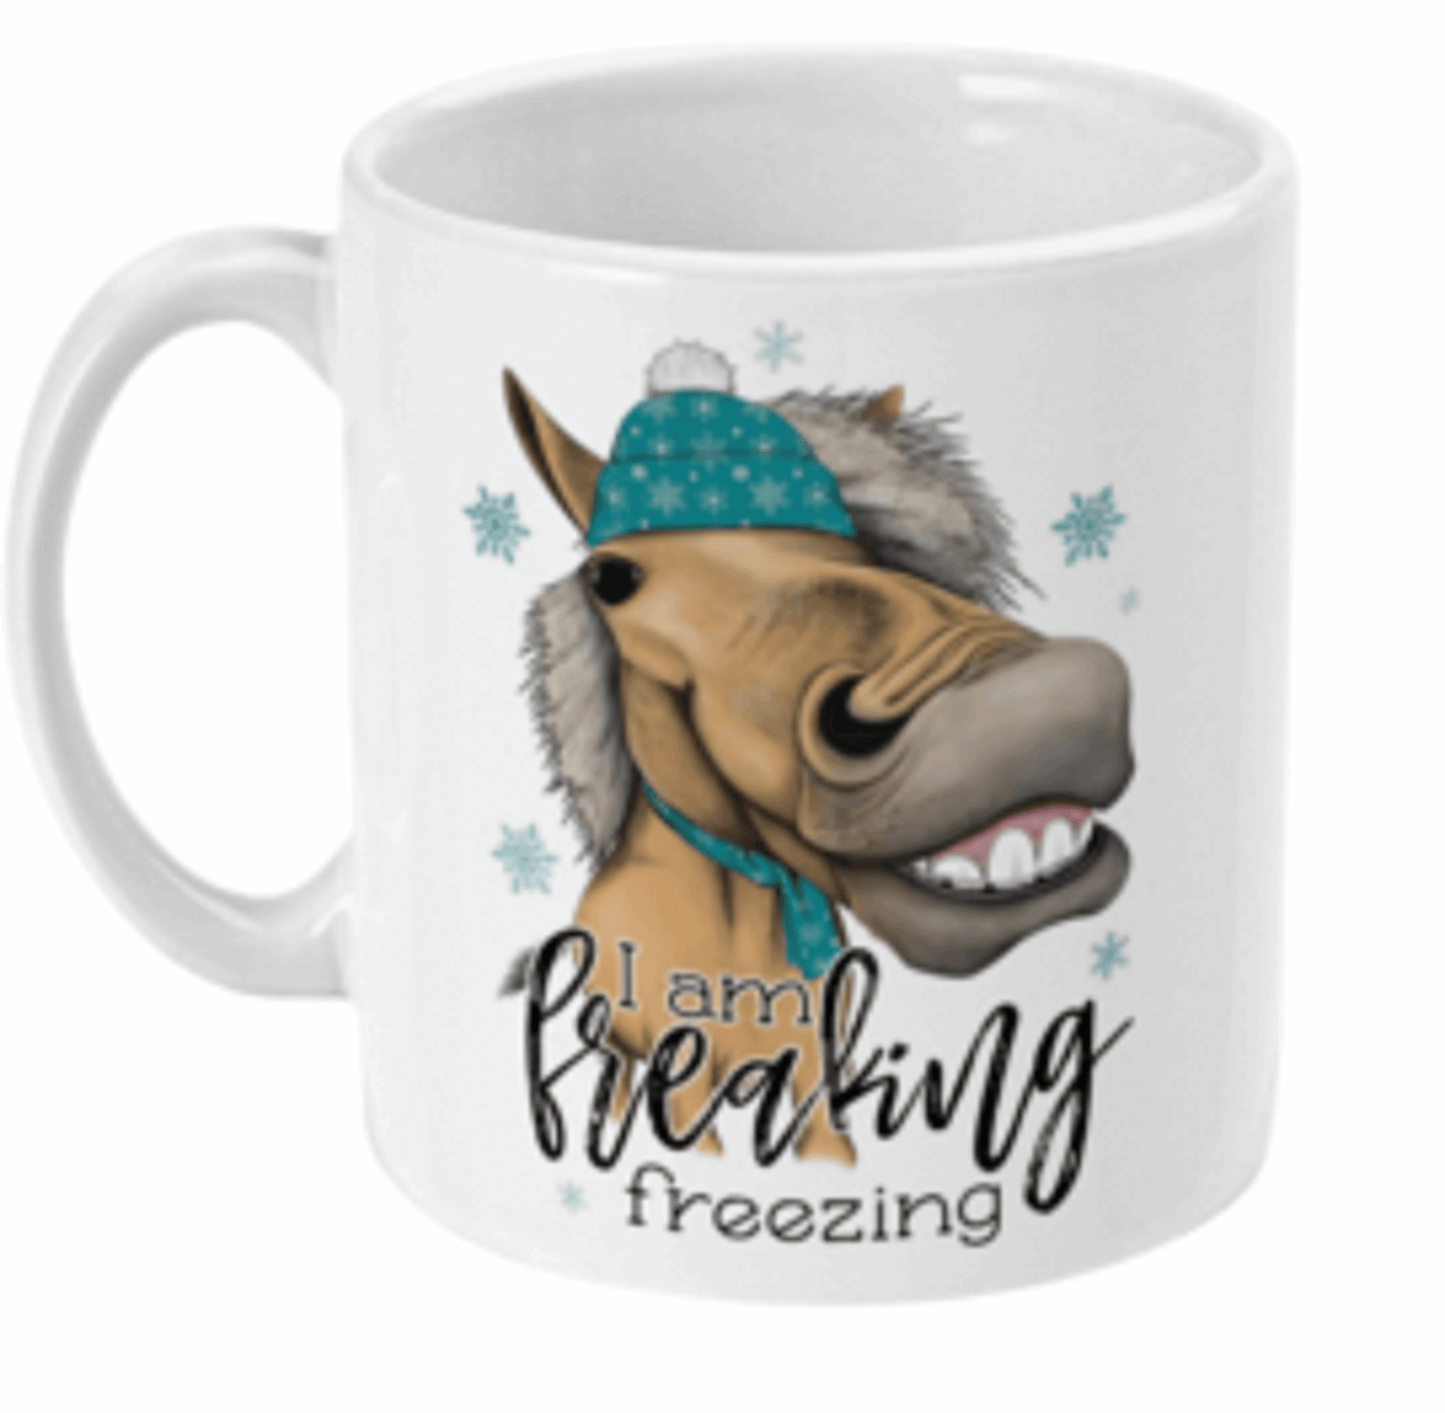  I am Freaking Freezing Horse Coffee Mug by Free Spirit Accessories sold by Free Spirit Accessories